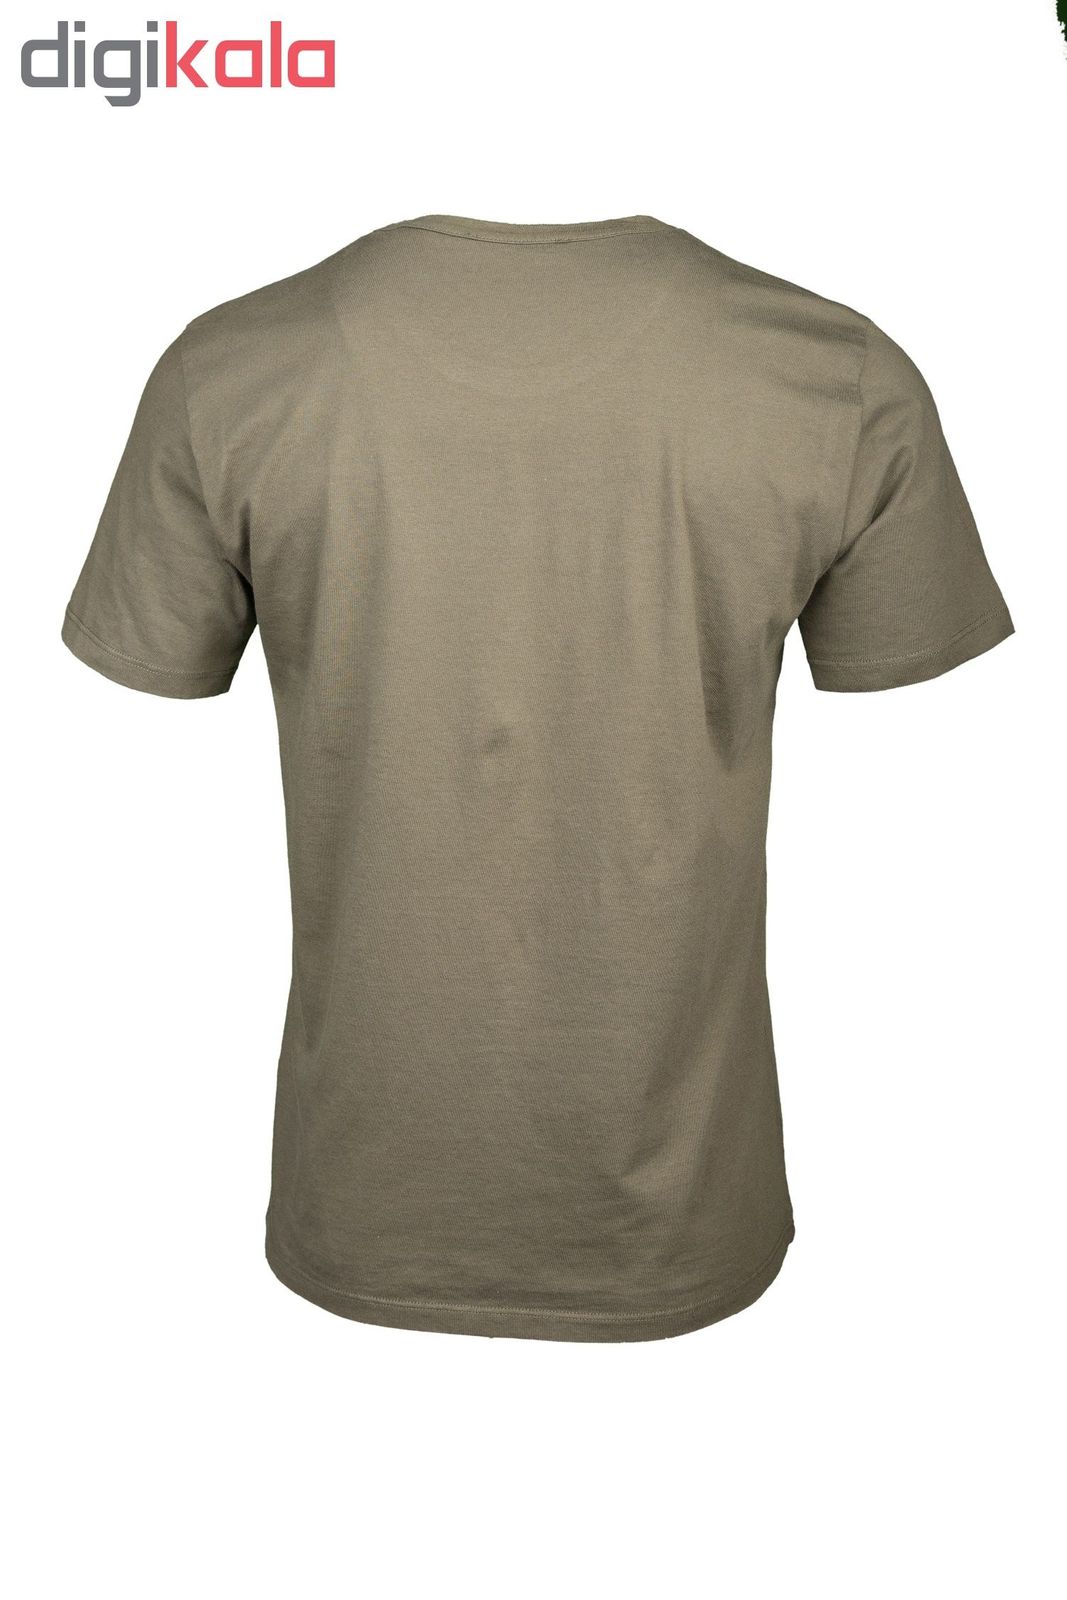 تی شرت مردانه سیاوود مدل C-B-20400 کد 6320400 رنگ زیتونی